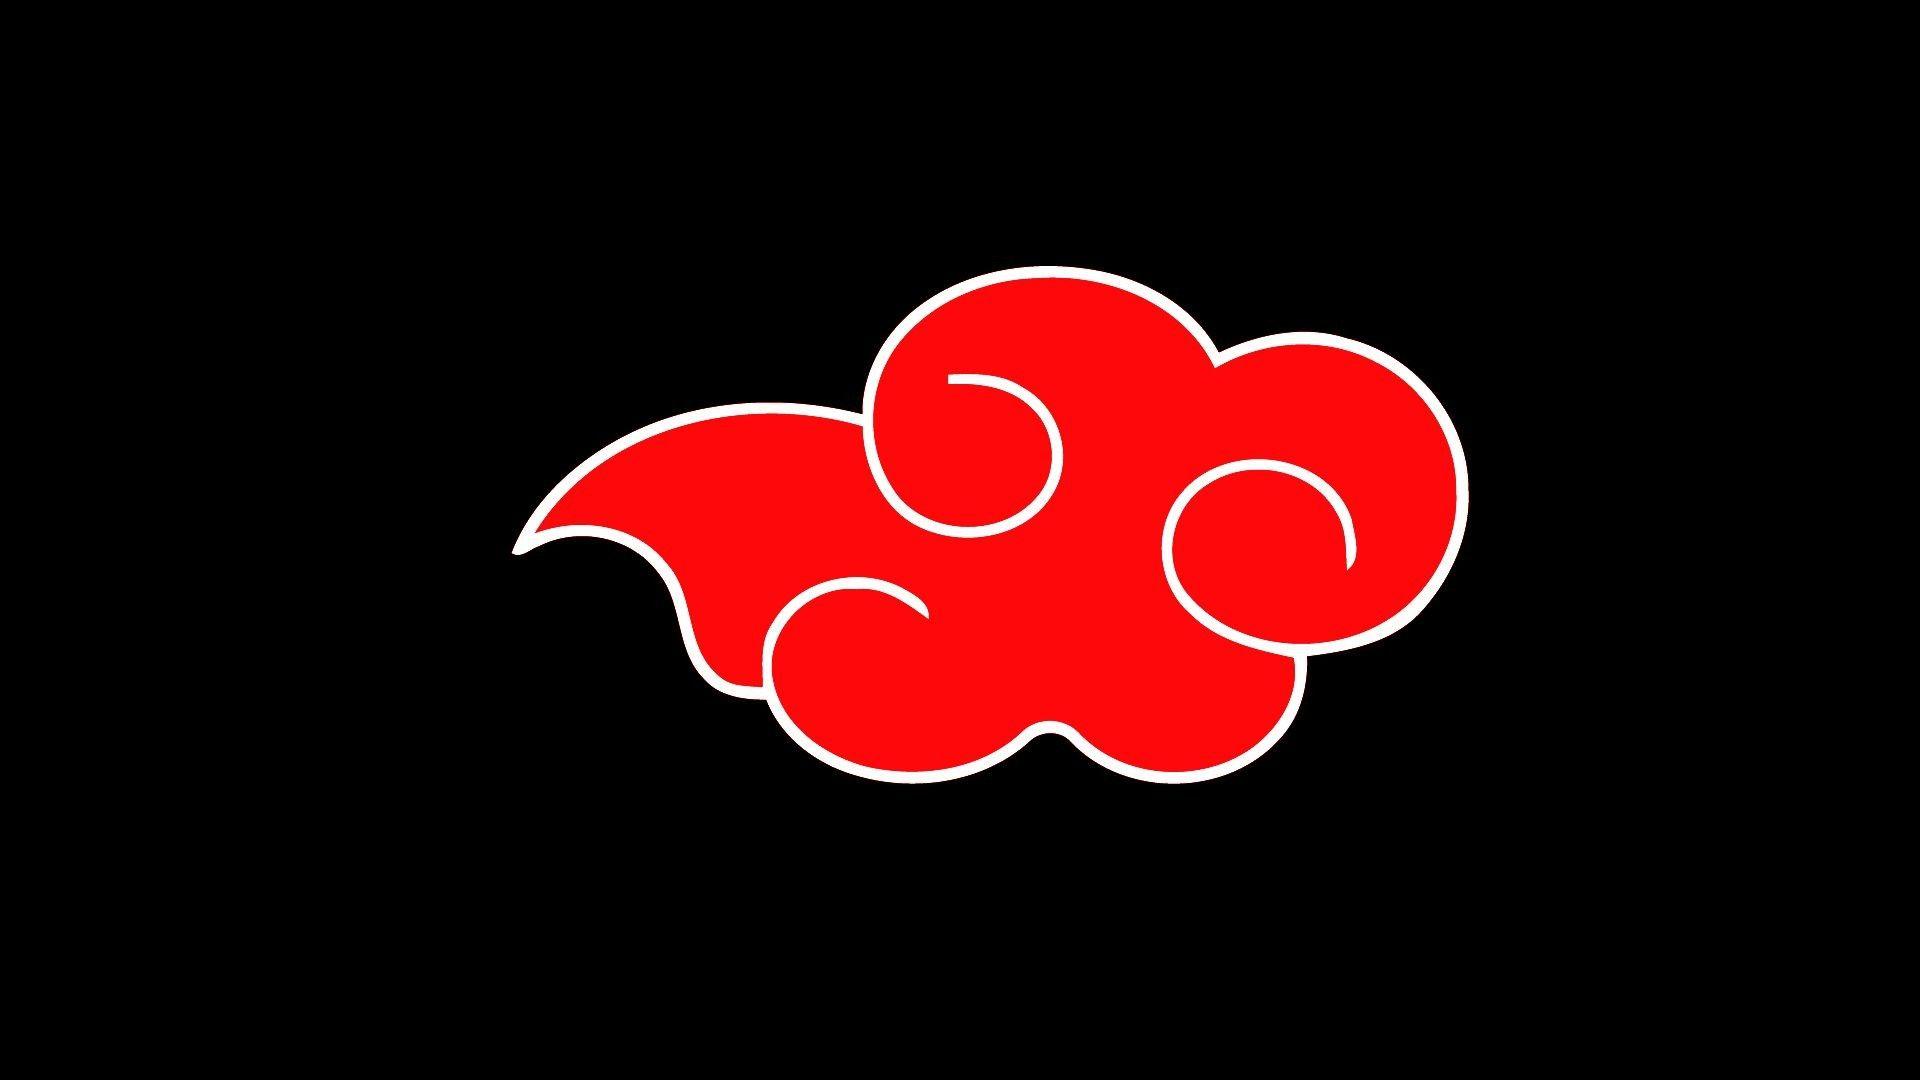 akatsuki logo wallpaper by Tomaseek - Download on ZEDGE™